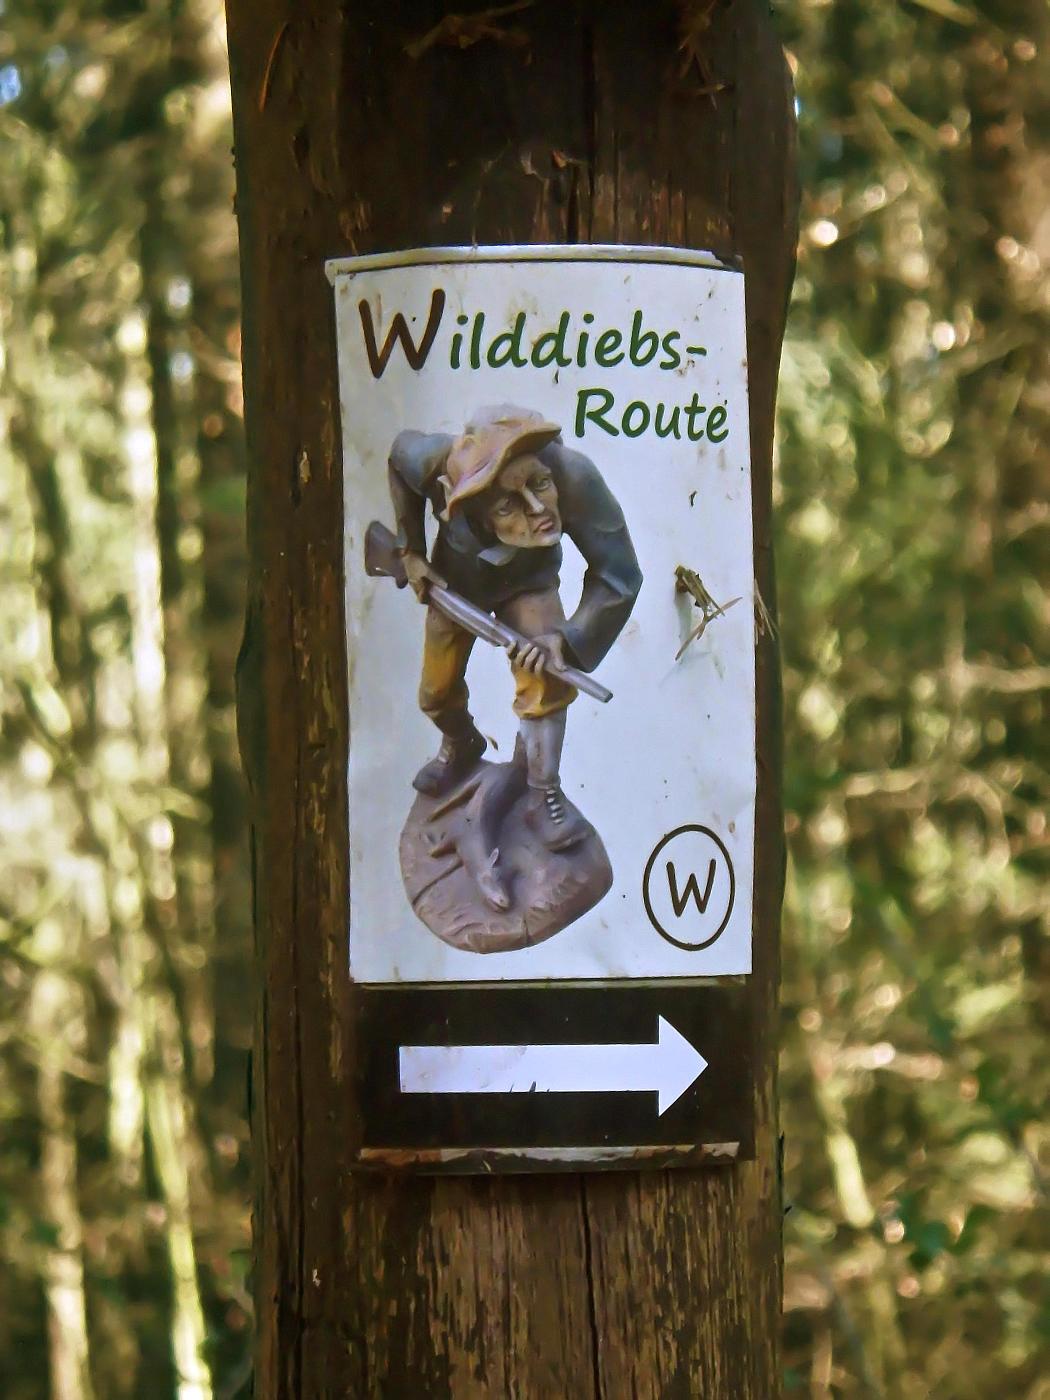 Wilddiebs-Route